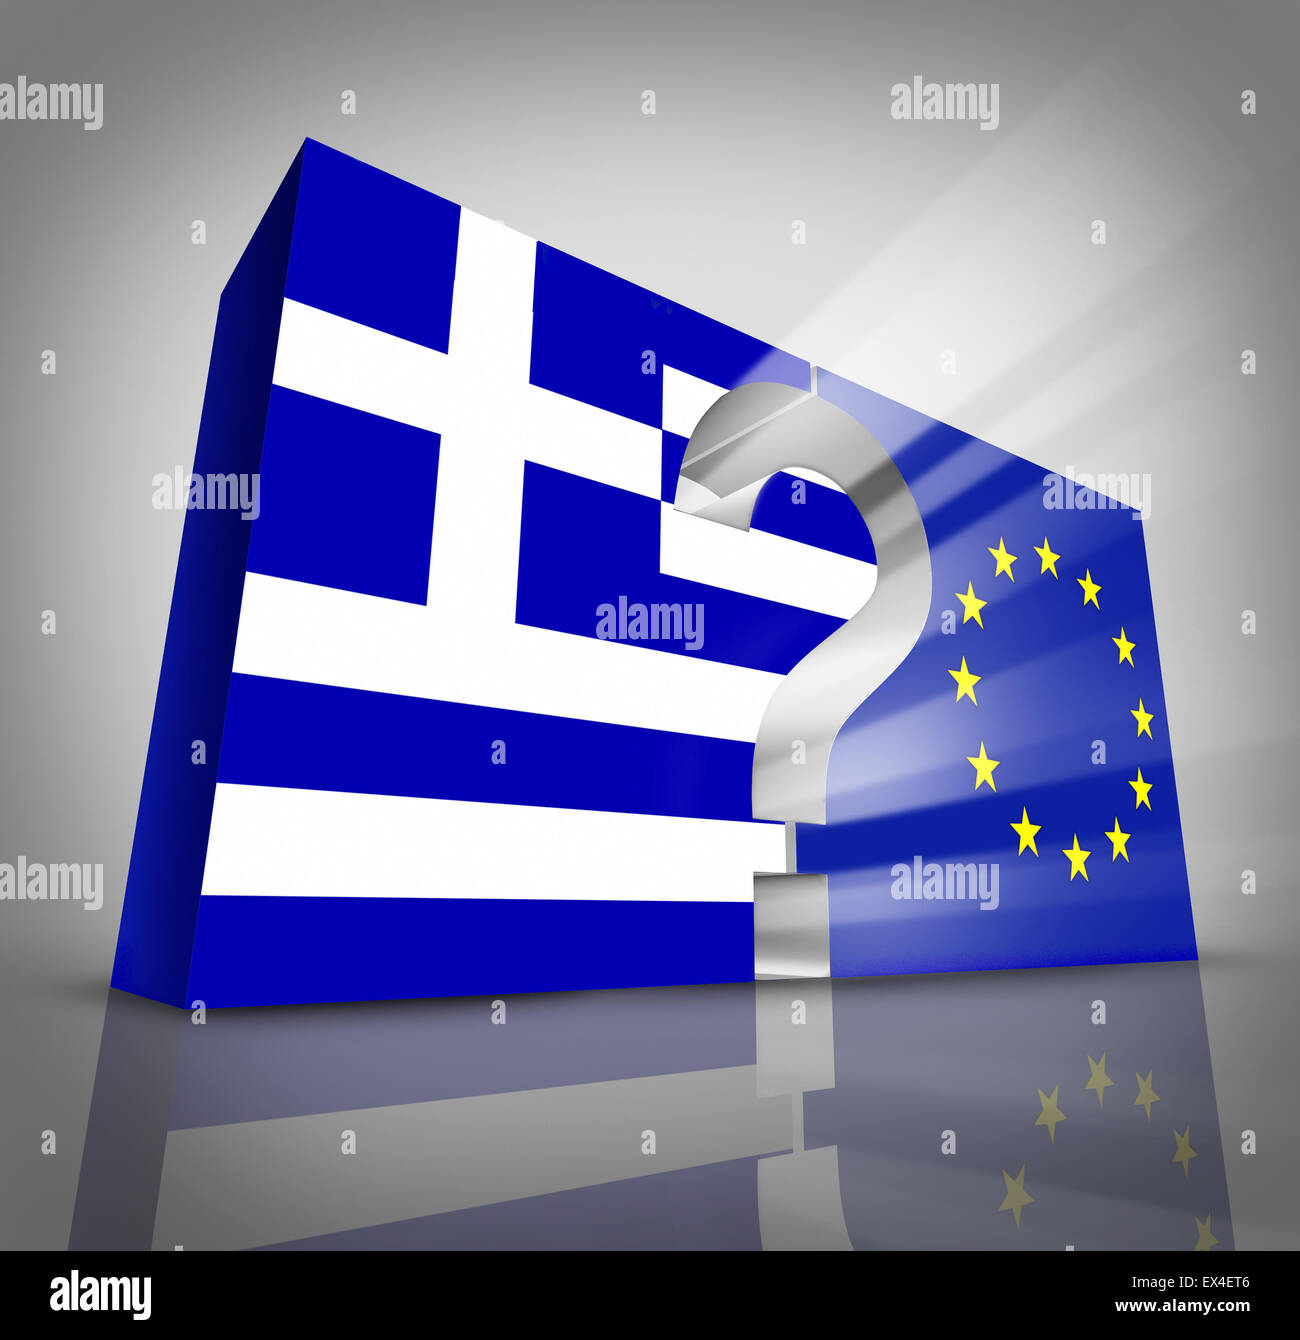 Europäische Griechenland Fragen oder griechischen Schulden Krise und Sparmaßnahmen-Management-Konzept als drei dimensionale blau-weißen Flagge und Symbol der Europäischen Union mit einem Fragezeichen dazwischen als Athen Finanzwirtschaft Metapher. Stockfoto